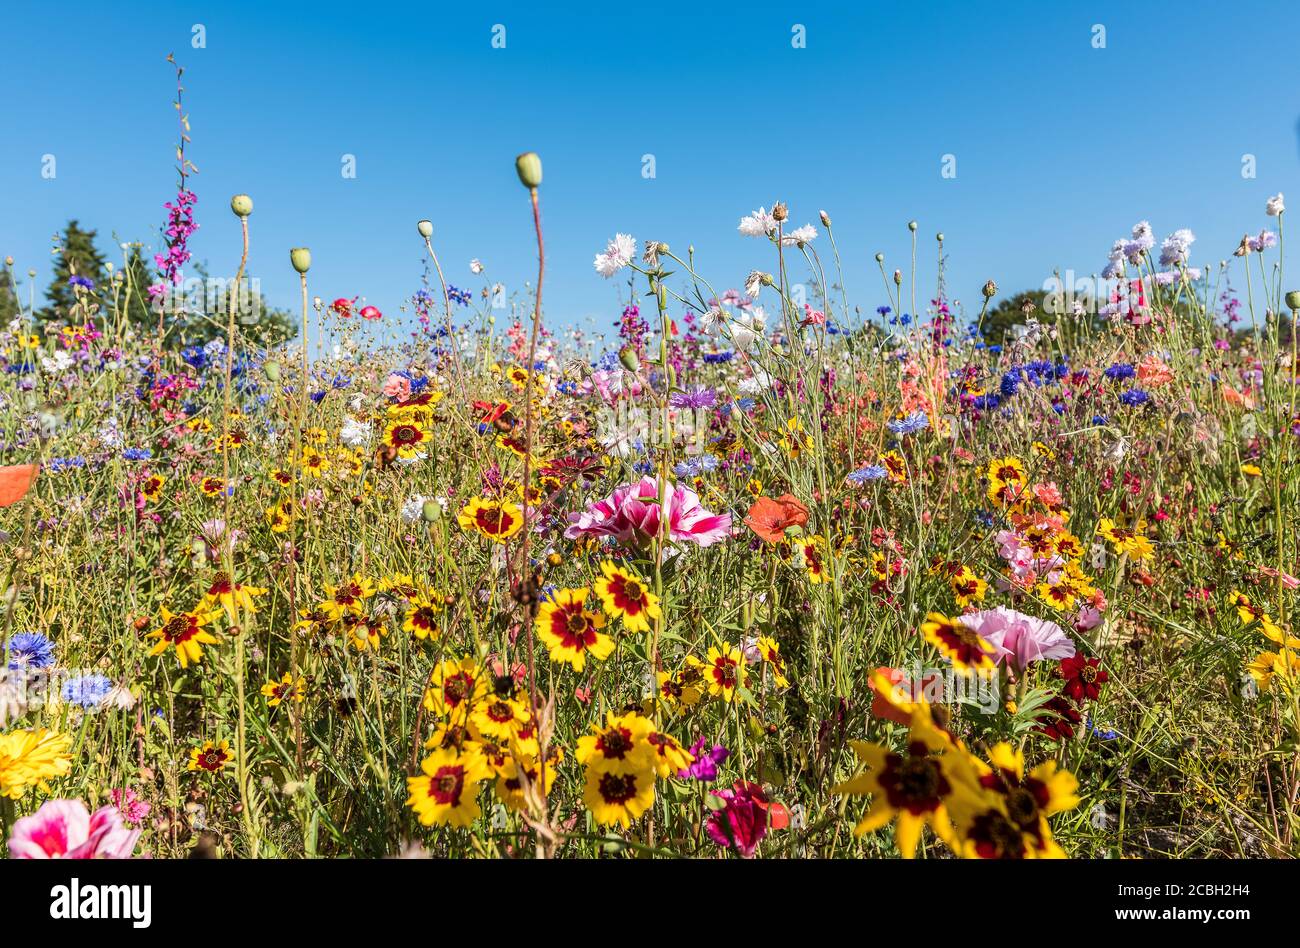 Fleurs sauvages aux couleurs vives, Holl, Danemark, 13 août 2020 Banque D'Images